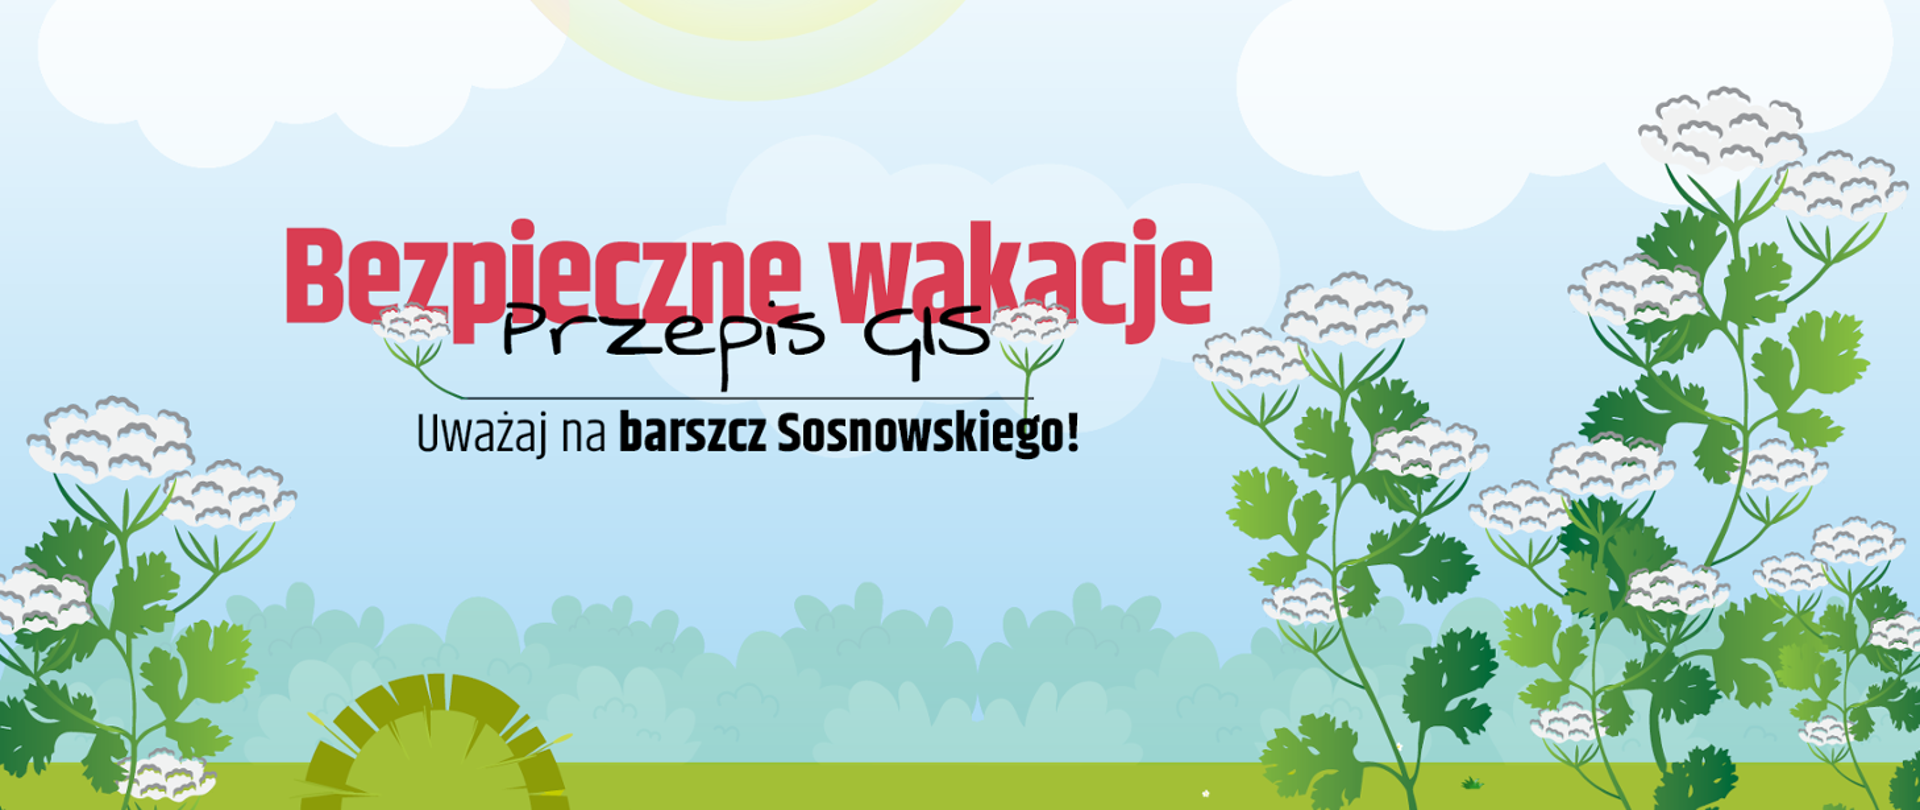 Grafika przedstawiająca roślinę - barszcz Sosnowskiego. Na środku grafiki napis: Bezpieczne wakacje. Przepis GIS - Uważaj na barszcz Sosnowskiego